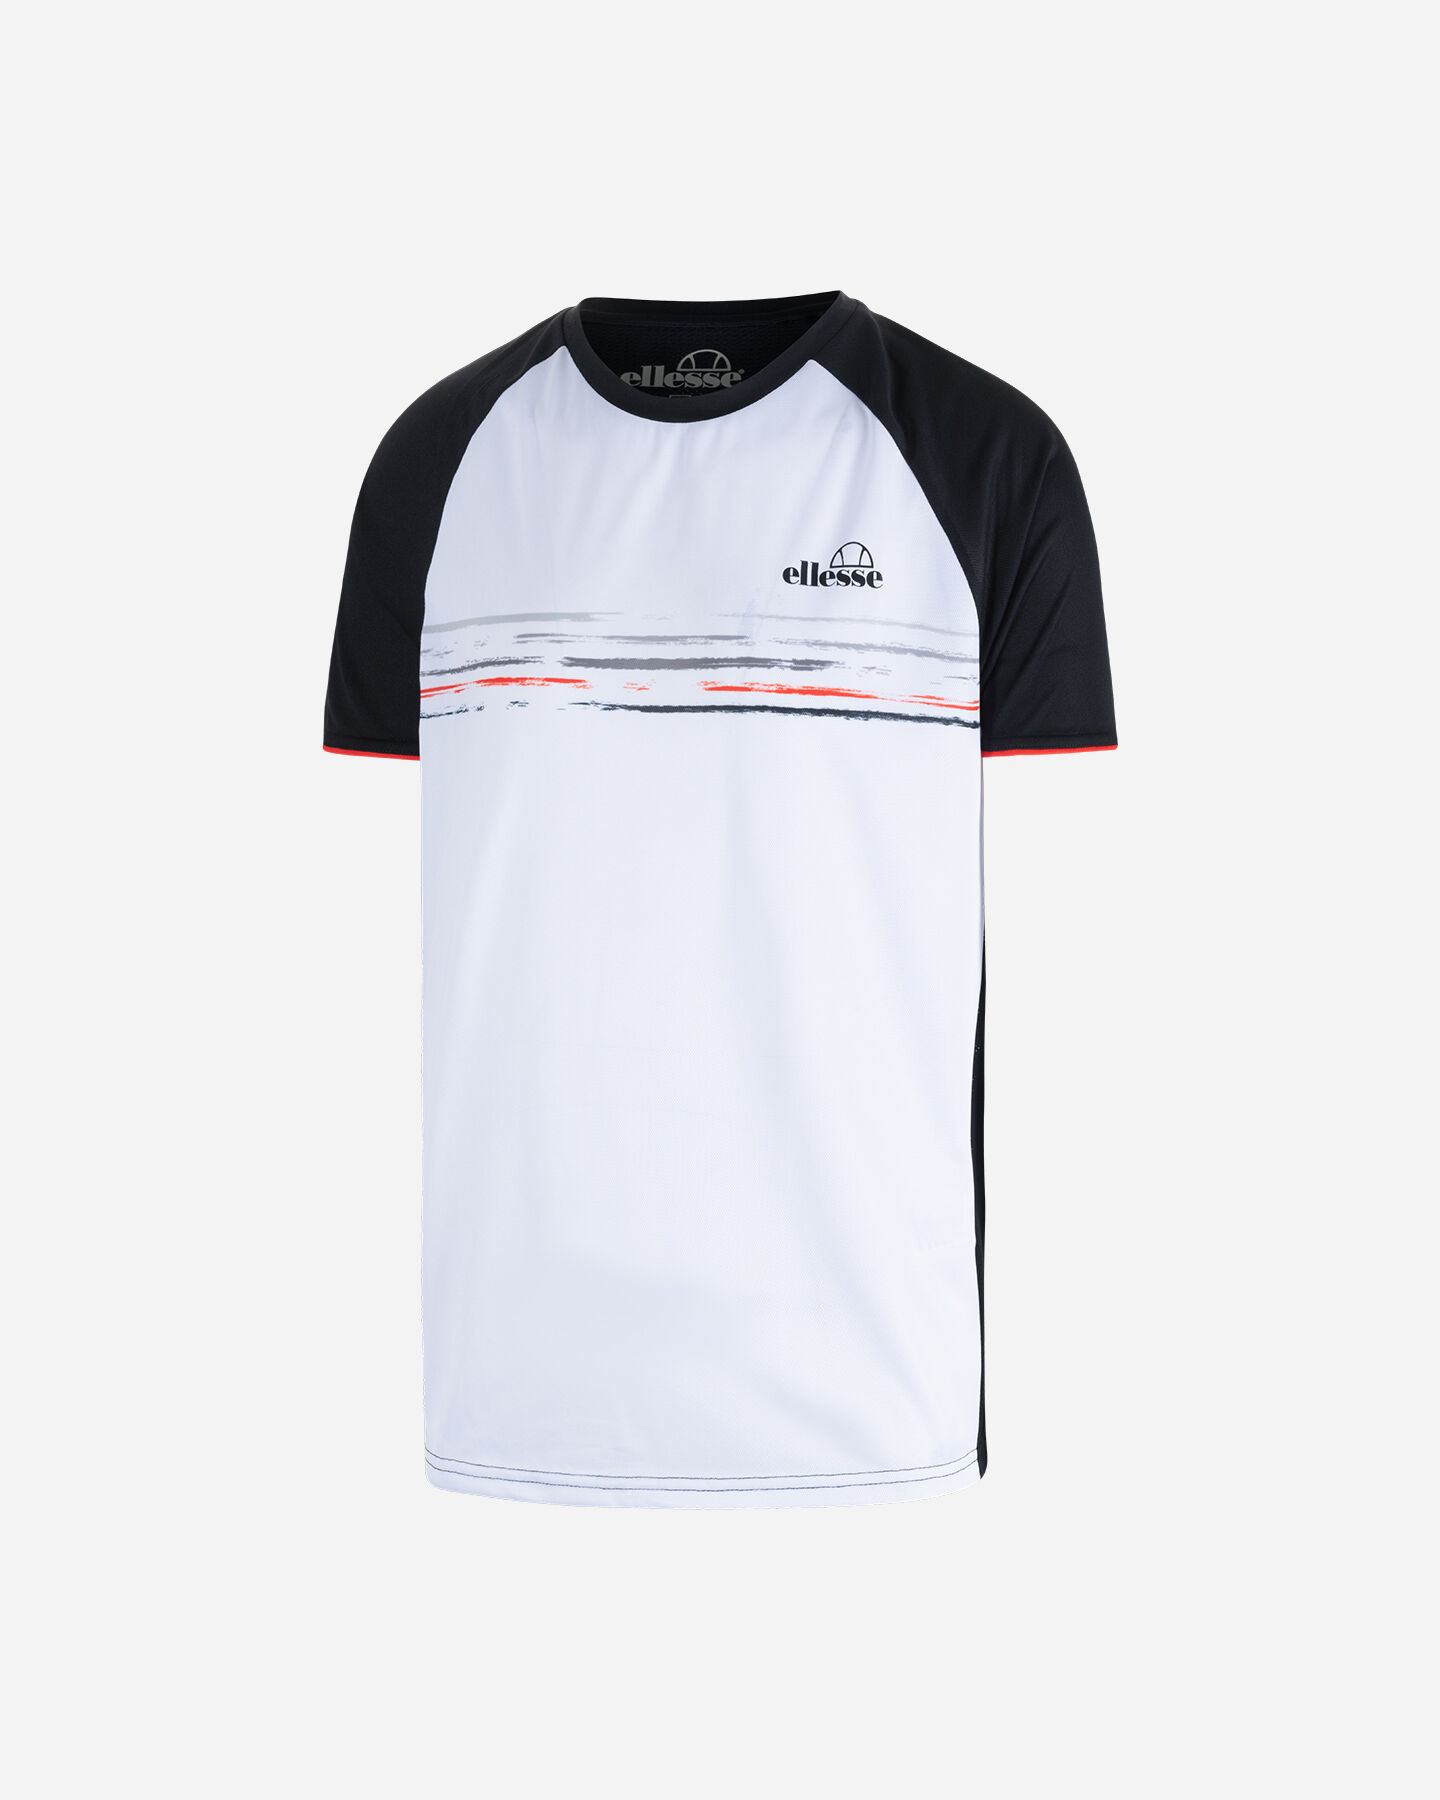  T-Shirt tennis ELLESSE FIVE STRIPES M S4117572|001|S scatto 5